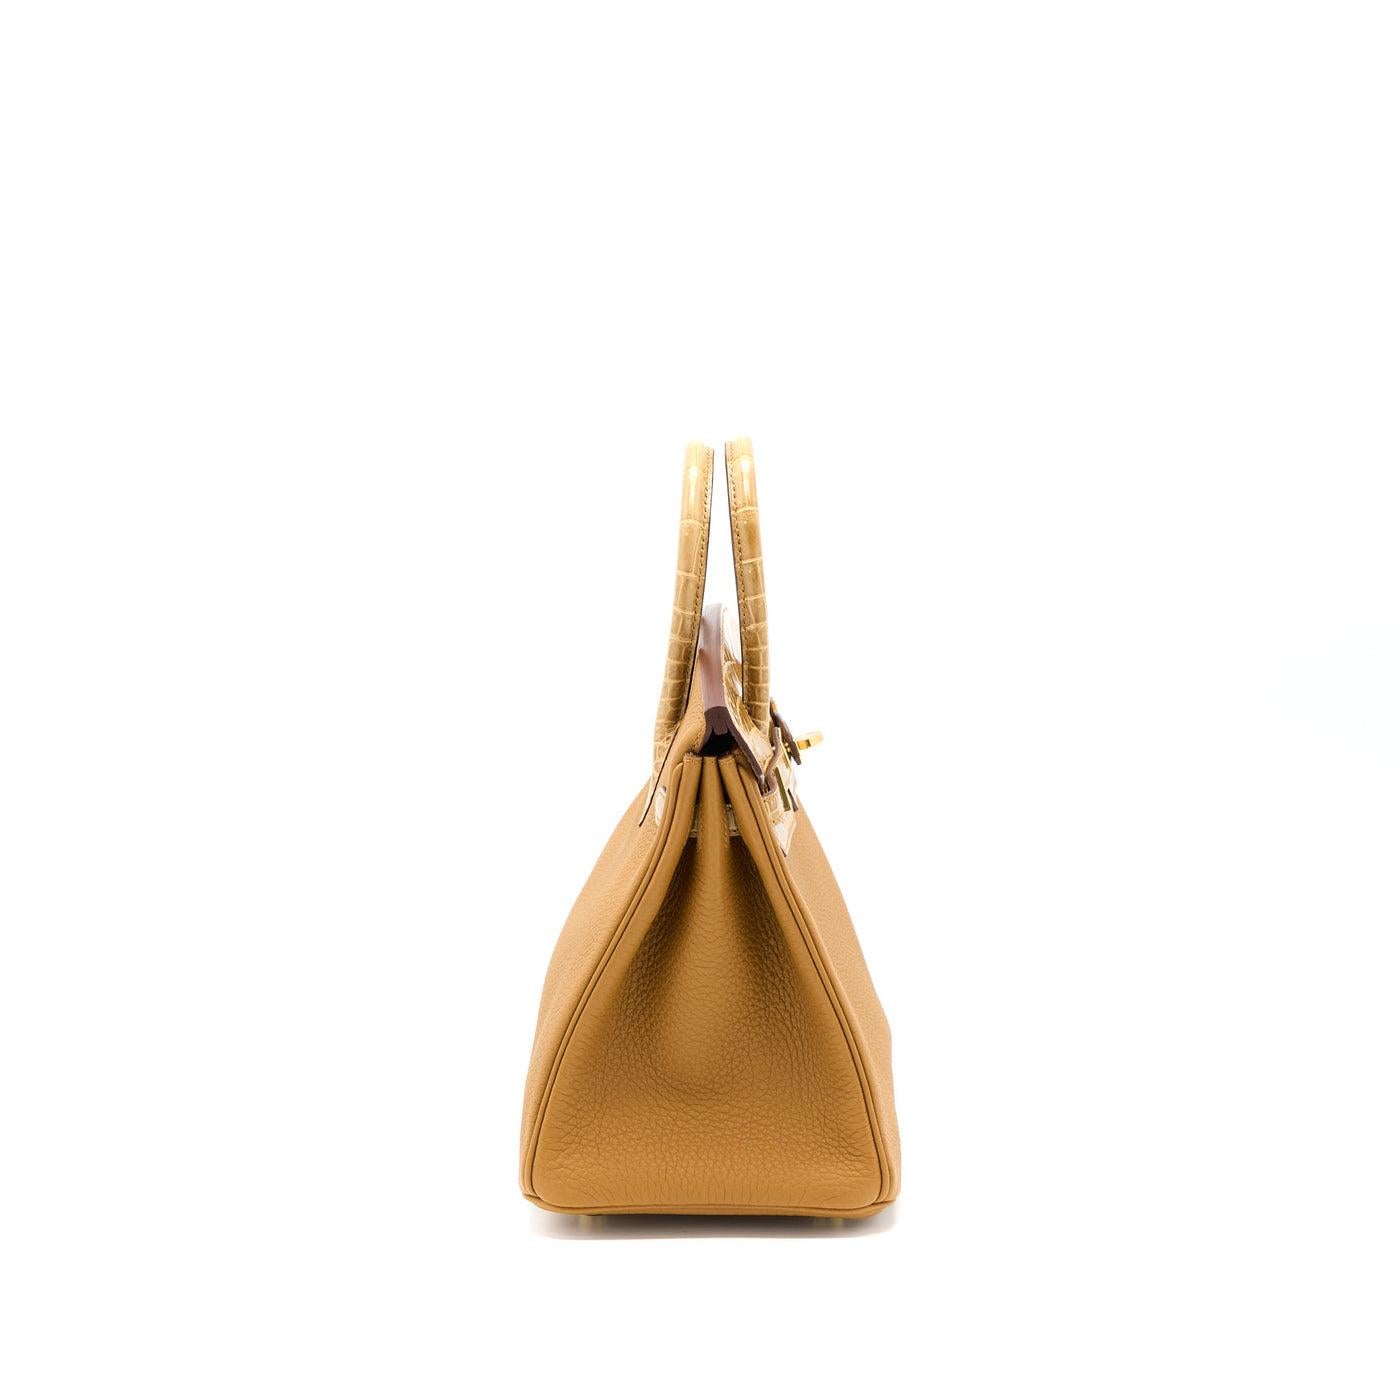 Hermes Birkin 25 Gold Camel Tan Bag Togo Gold Hardware Y Stamp